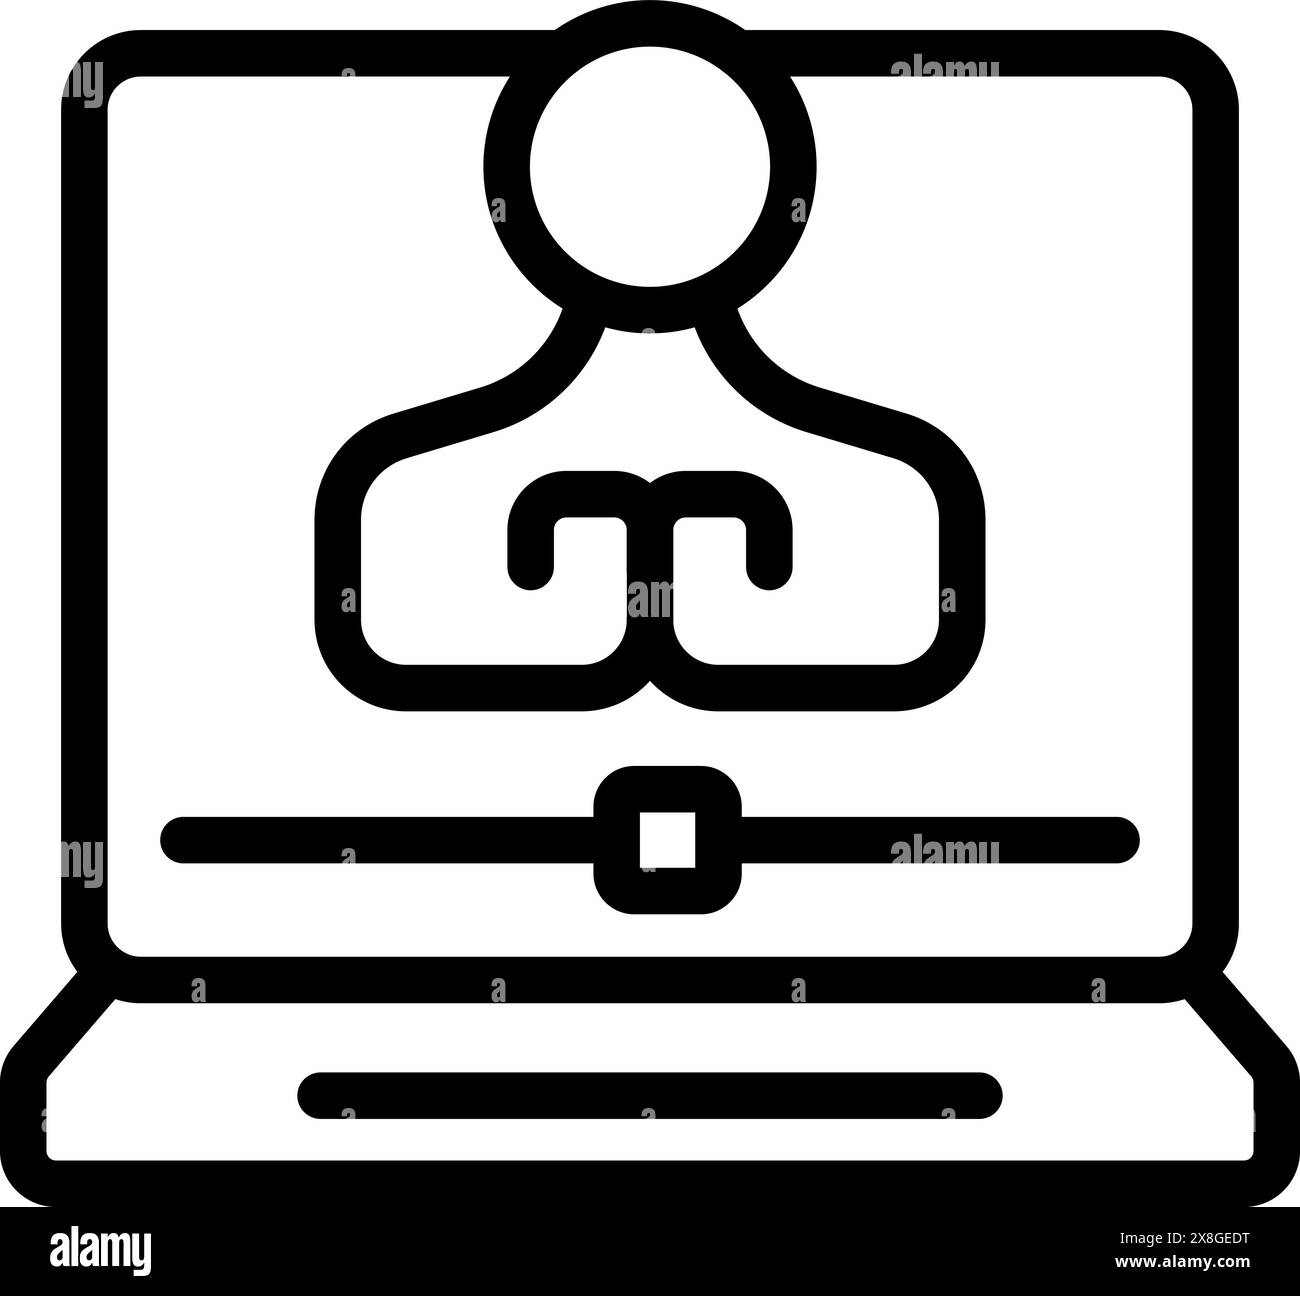 Image iconographique en noir et blanc représentant une personne sur un écran d'ordinateur pour visioconférence Illustration de Vecteur